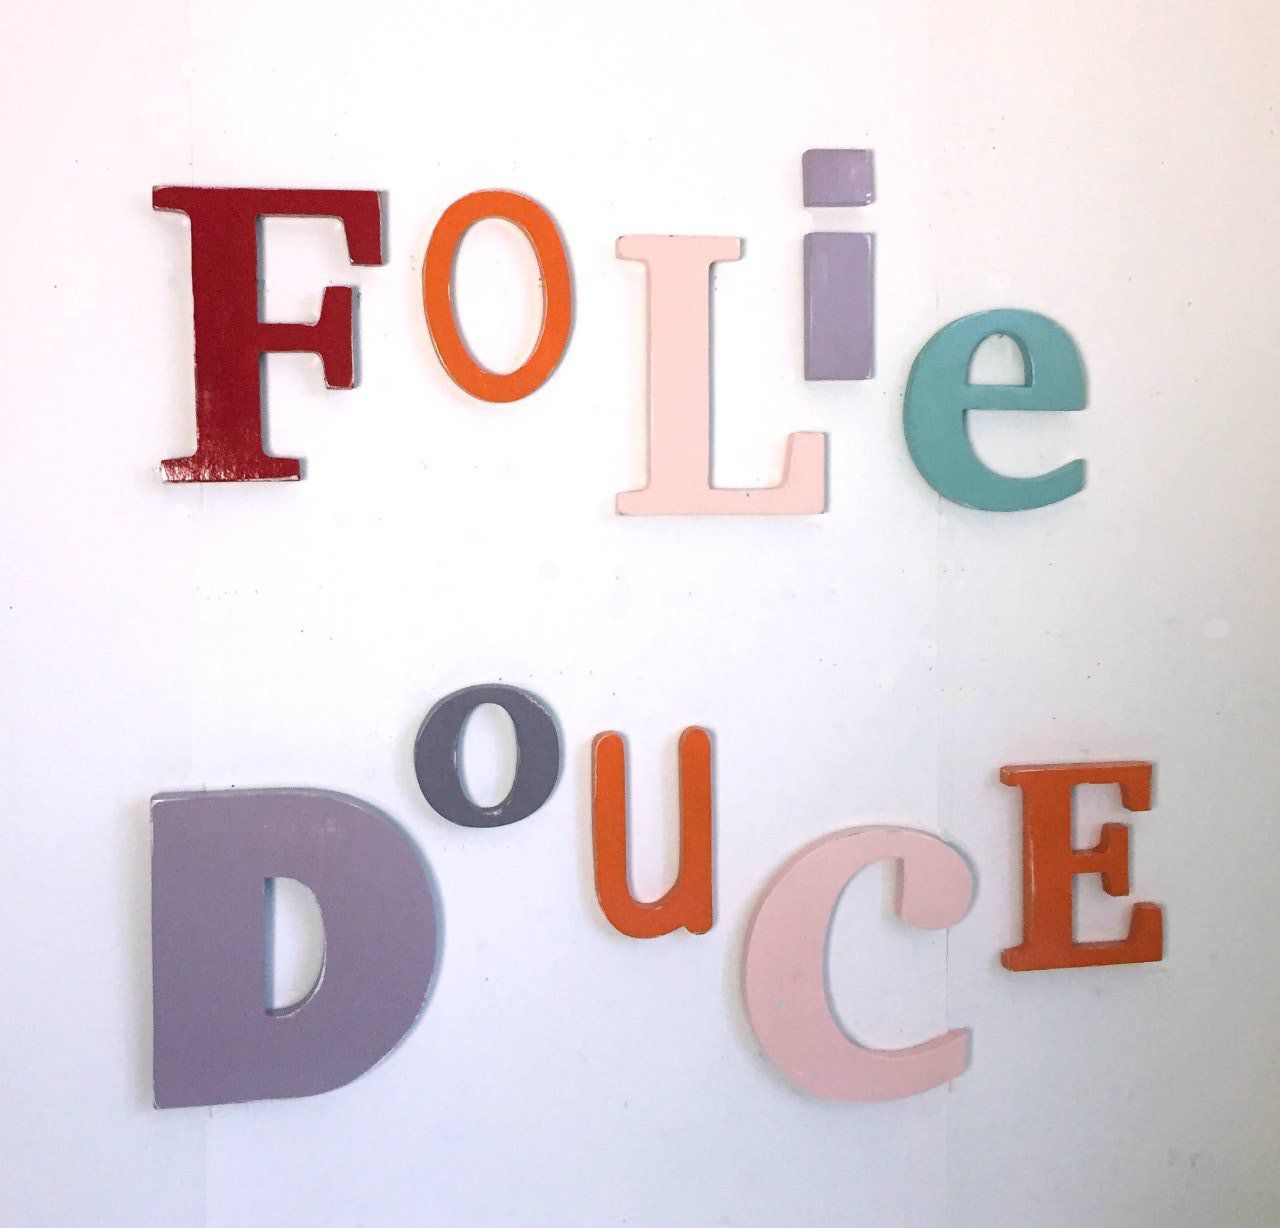 Mots à accrocher : "Folie Douce" tons rouge,orange,aubergine,bleu.